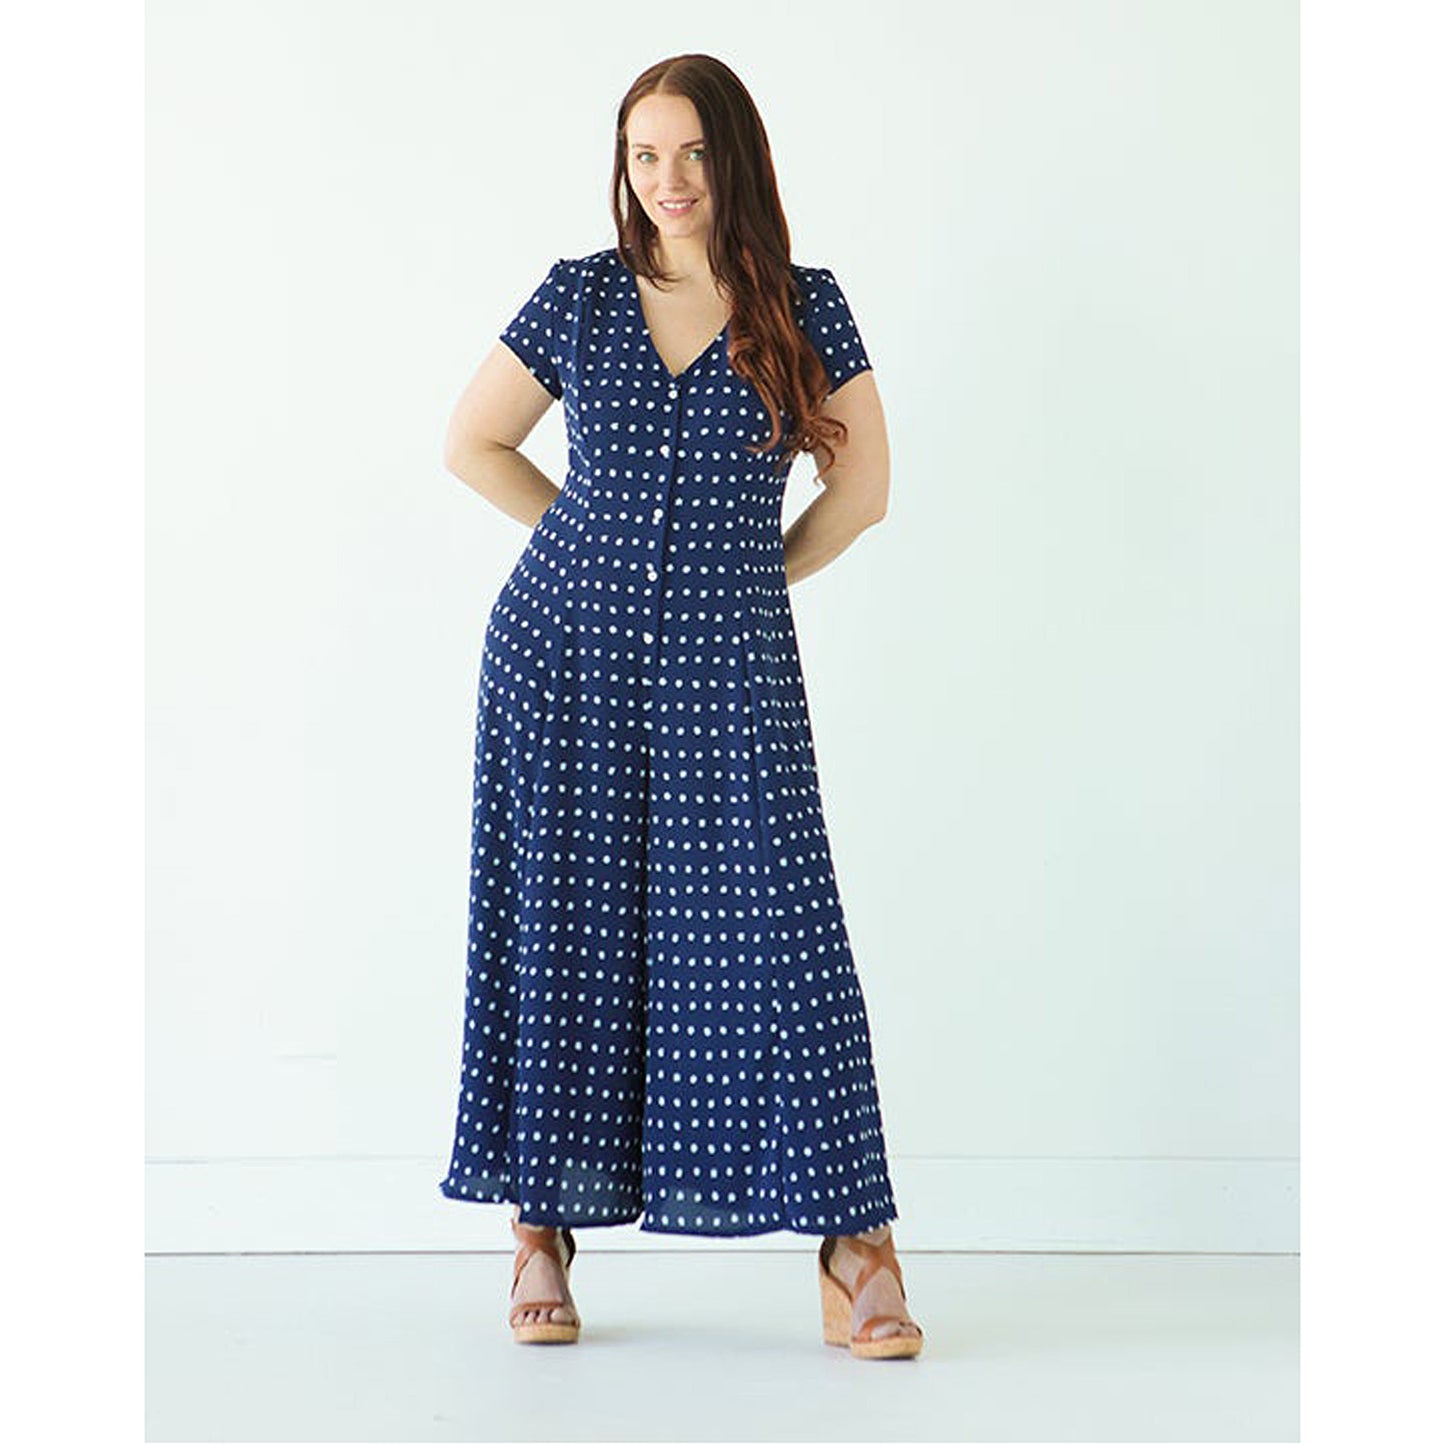 Shelby Dress / Romper Sewing Pattern - True Bias – Sew Sew Sew